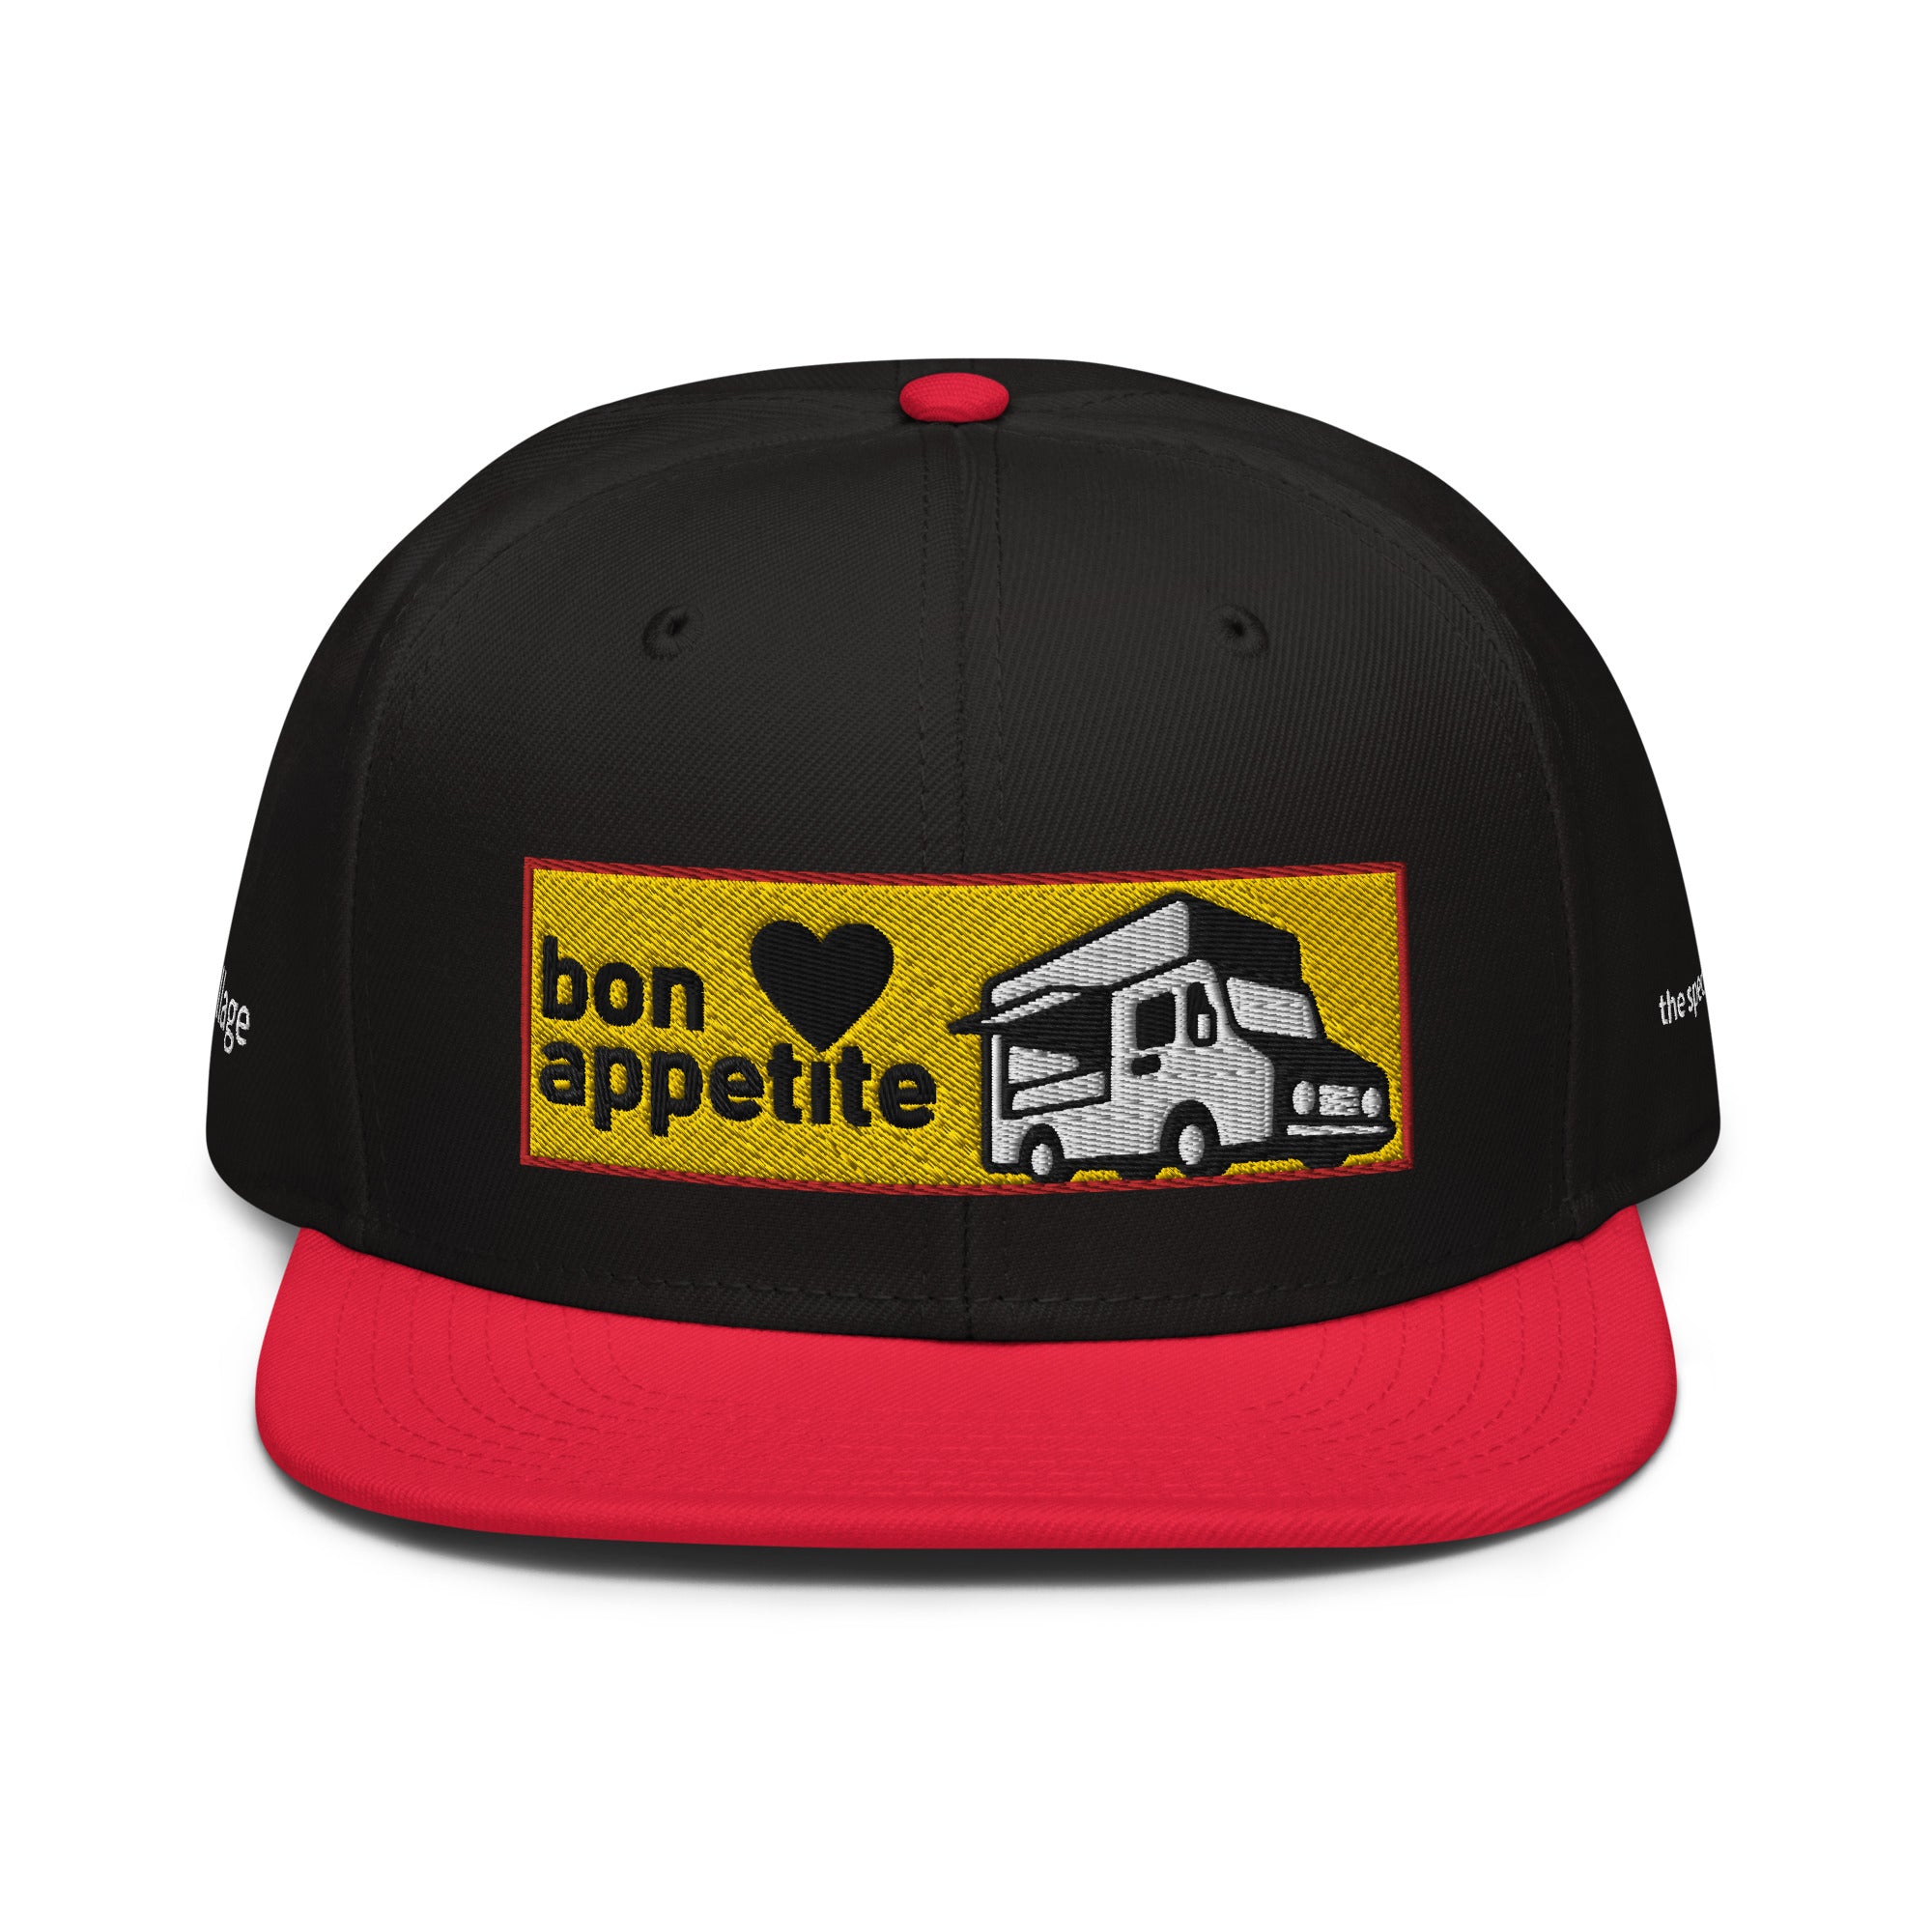 Snapback Cap [Bon appetit2] Red / Black / Black